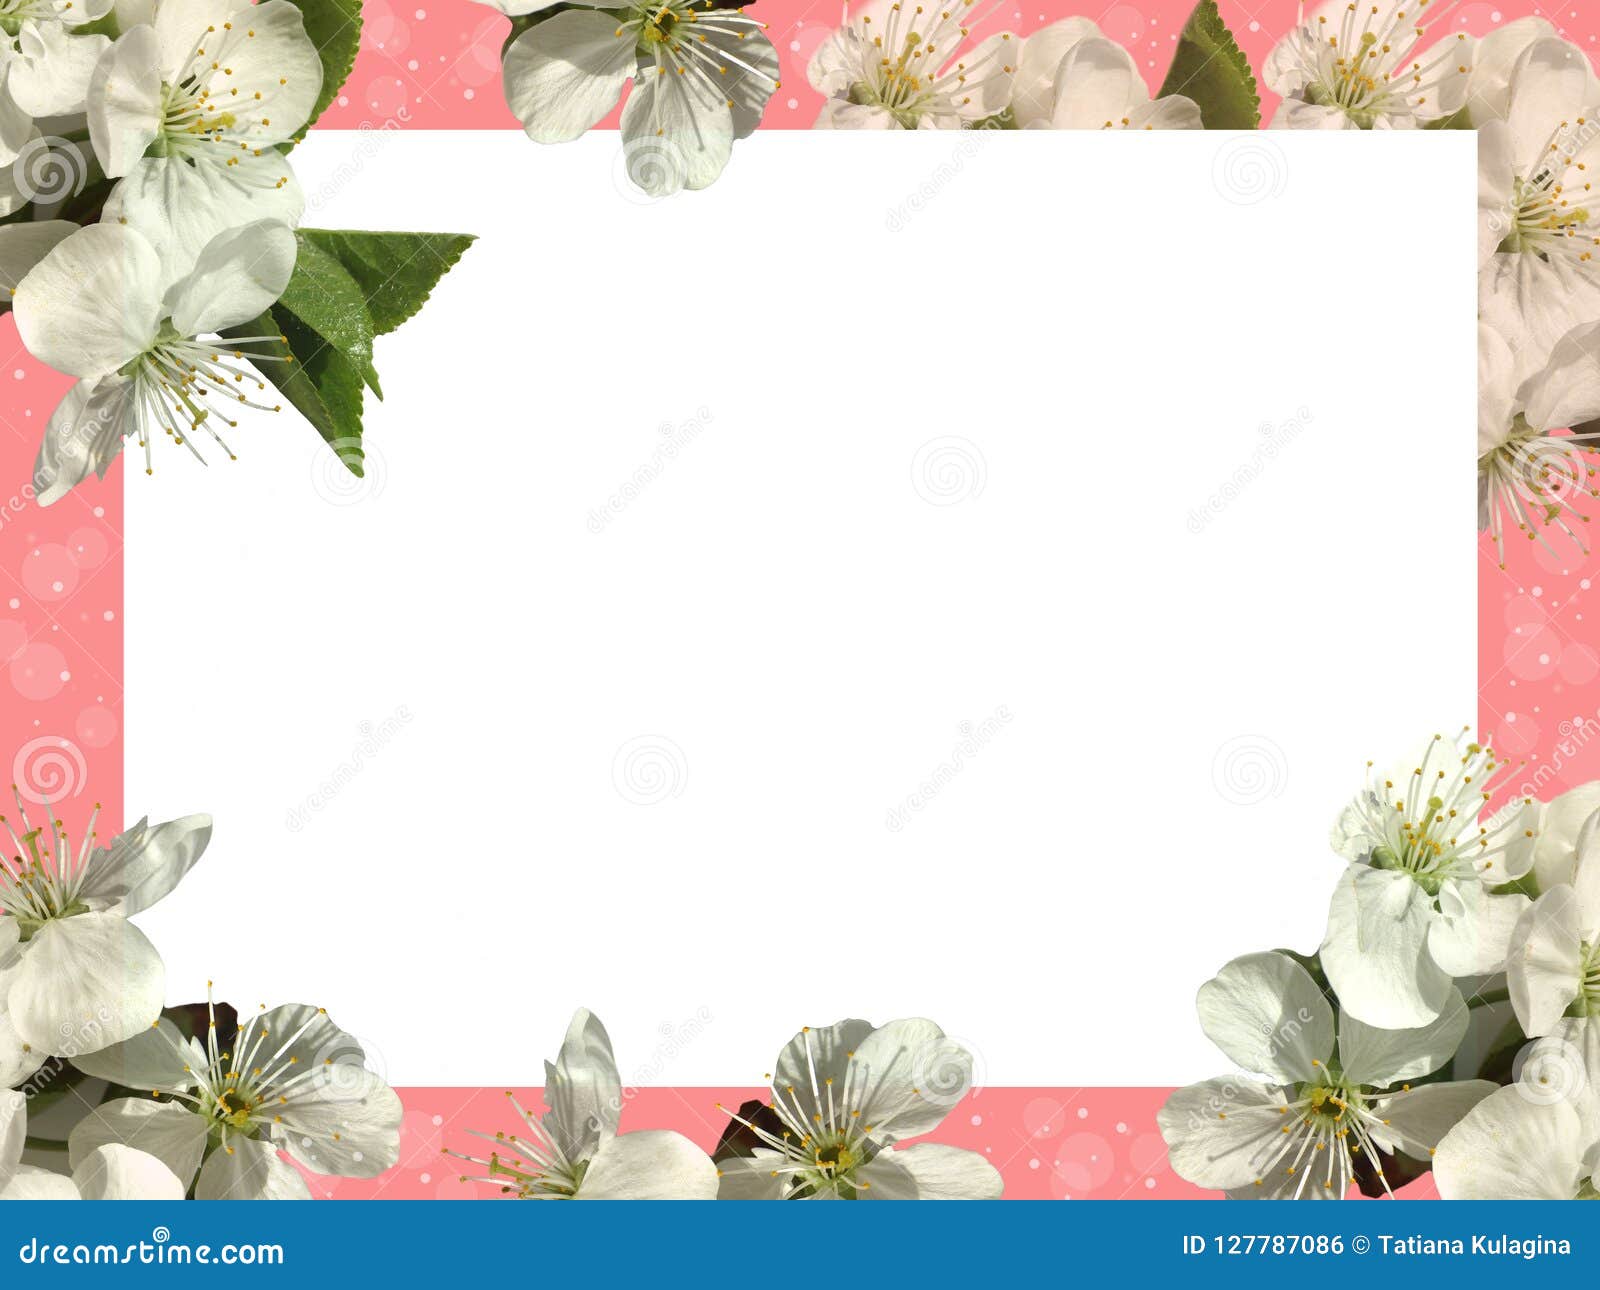 Feuille Blanche Sur Un Fond Rose Et Fleurs Blanches Photo stock - Image du  dessin, fête: 127787086